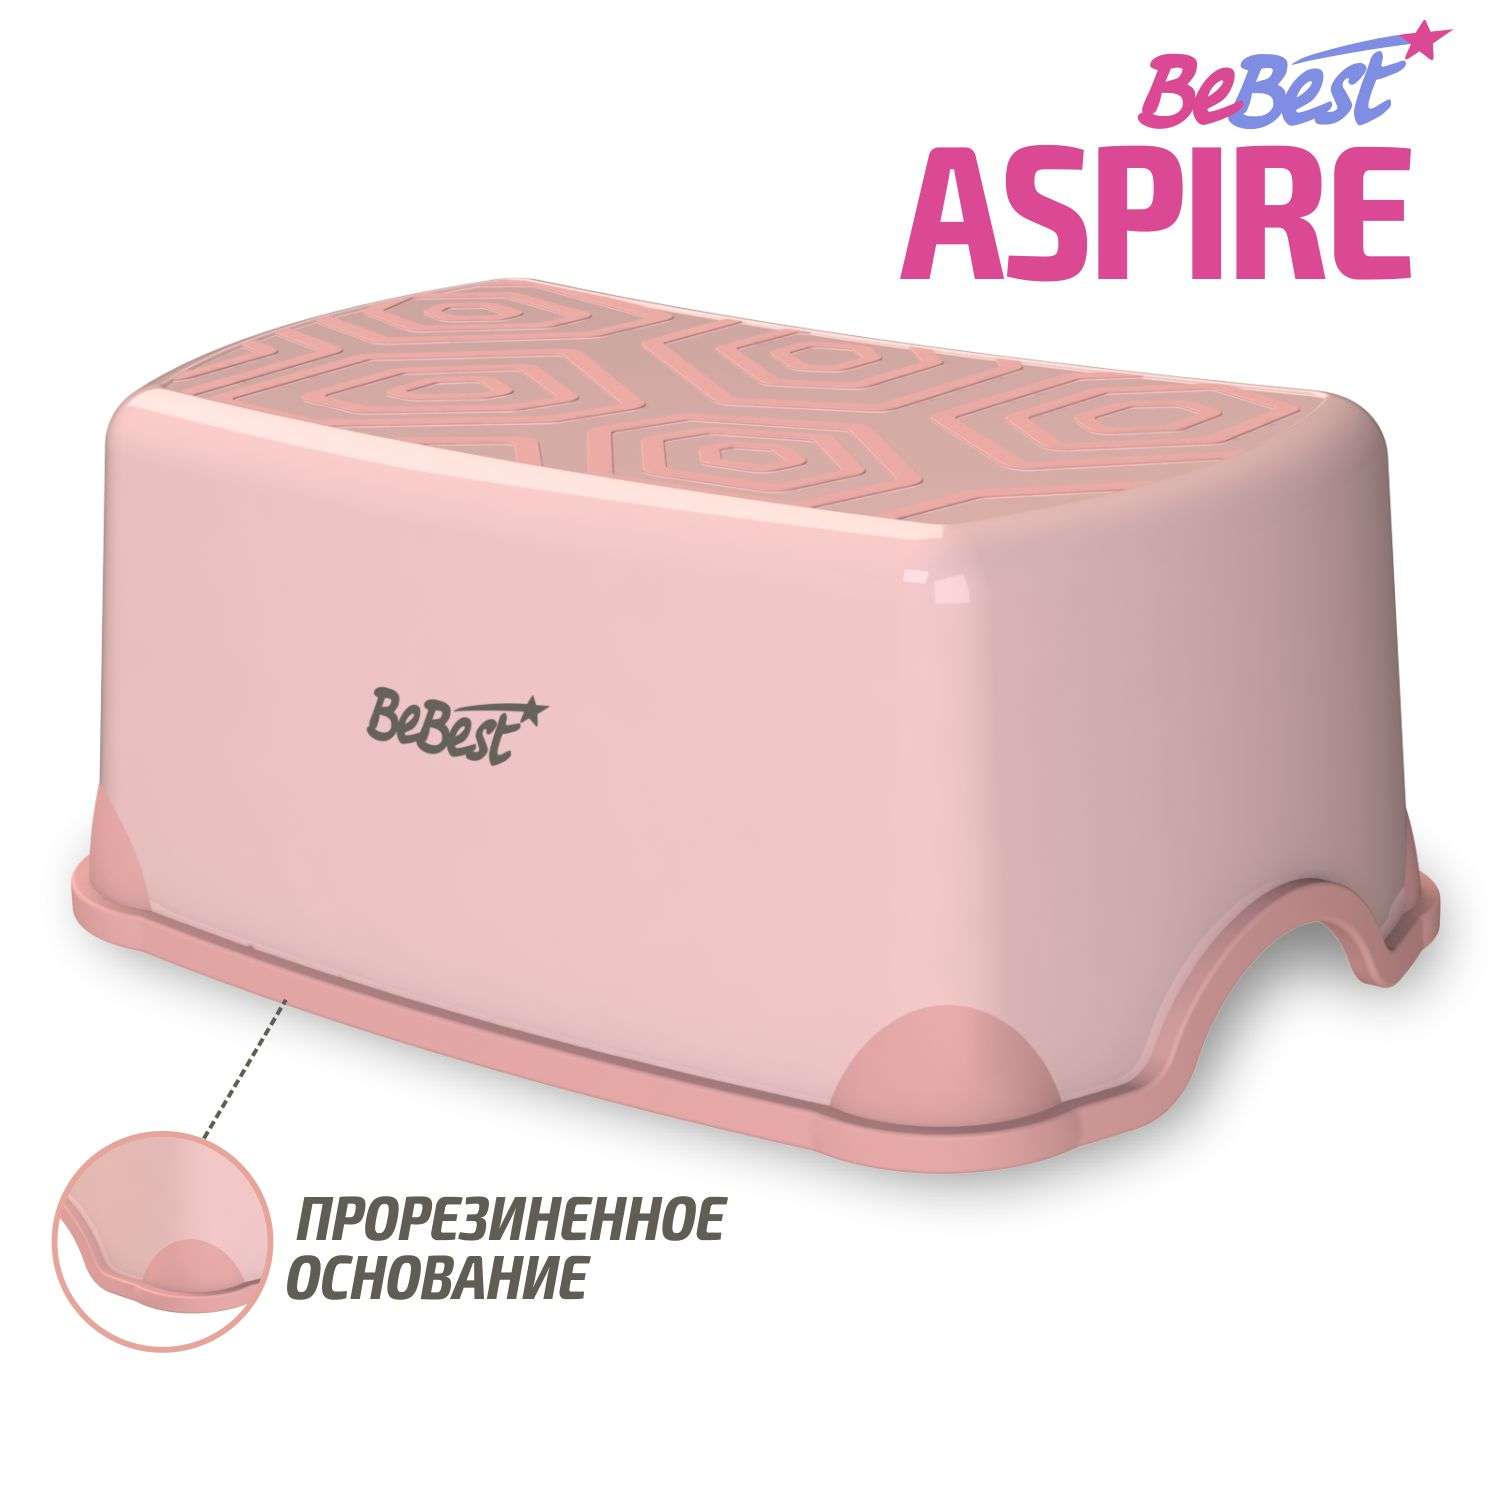 Подставка для ног BeBest Aspire розовый - фото 1